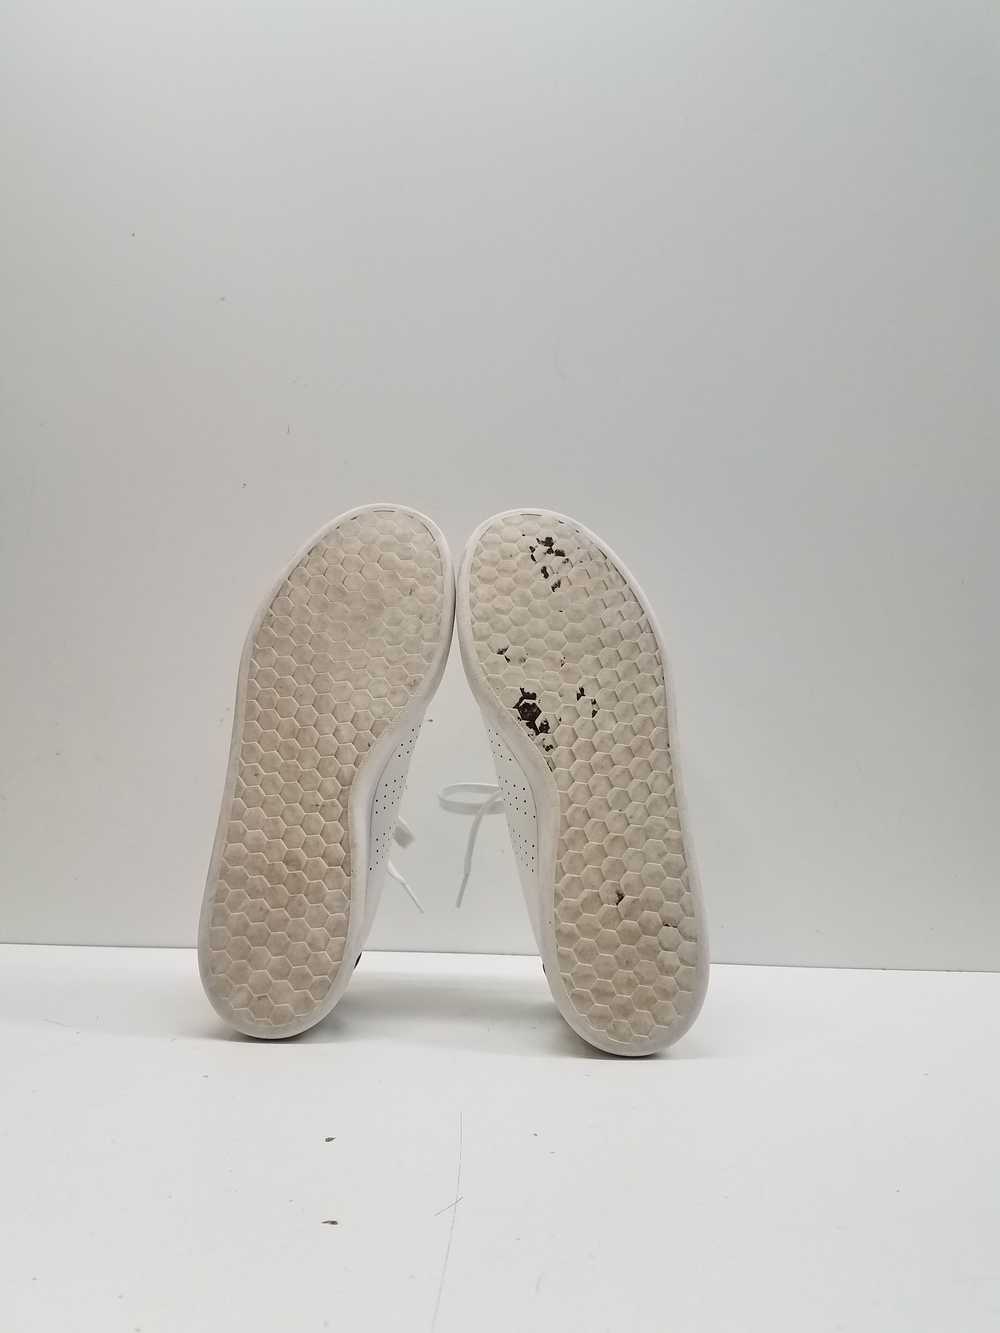 Adidas Advantage Shoes Cloud White Men's Size 9.5 - image 5